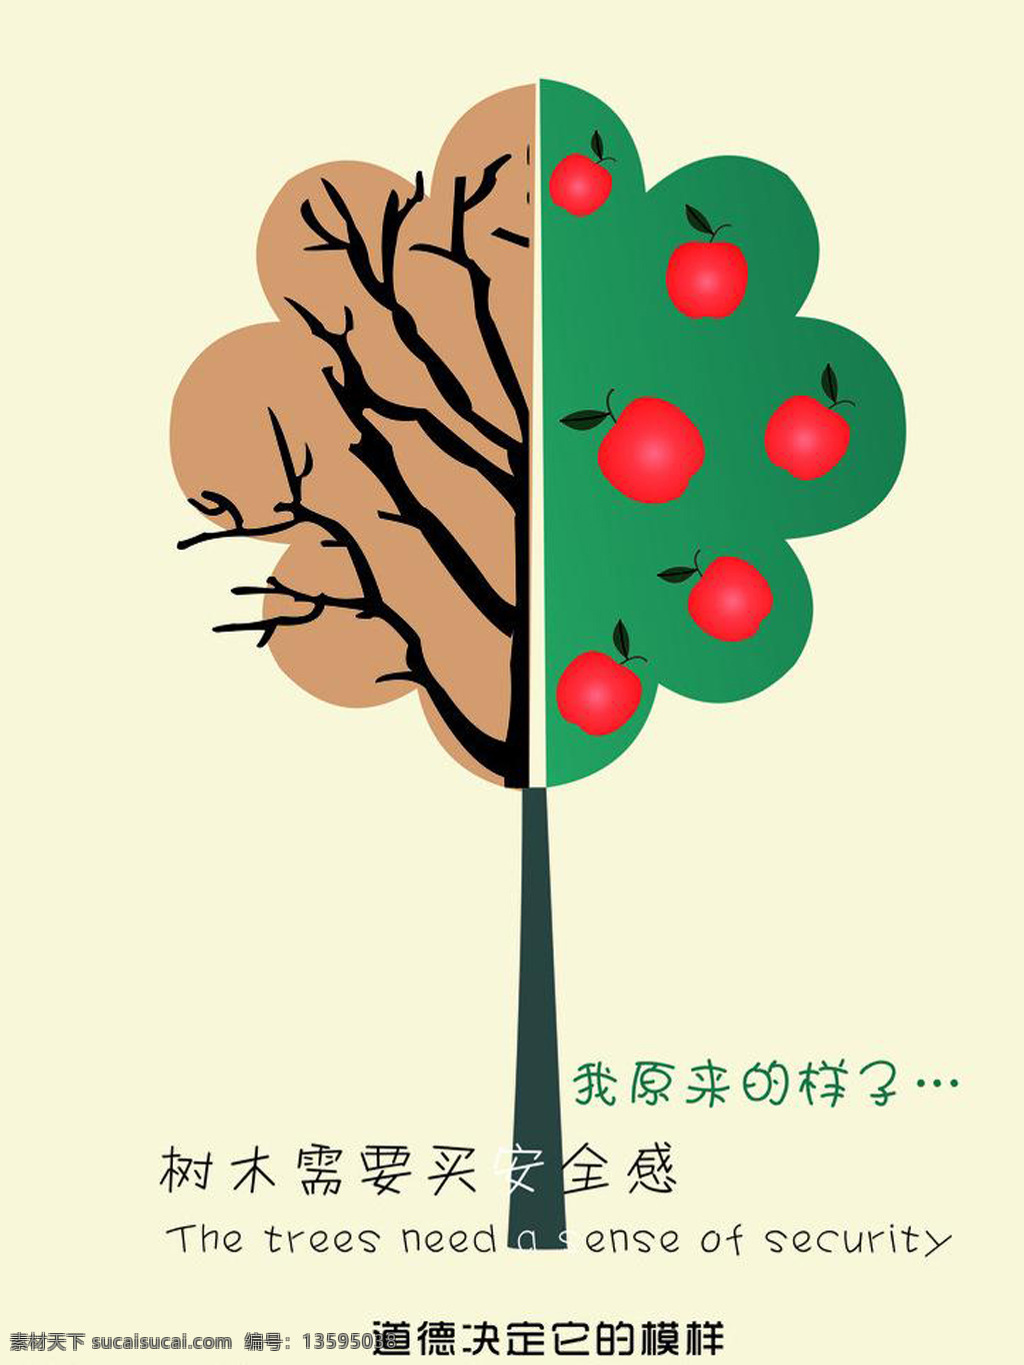 环保招贴海报 环保招贴 海报 招贴海报 创意 低碳节能 苹果 枯树 污染 节约 道德文明 白色